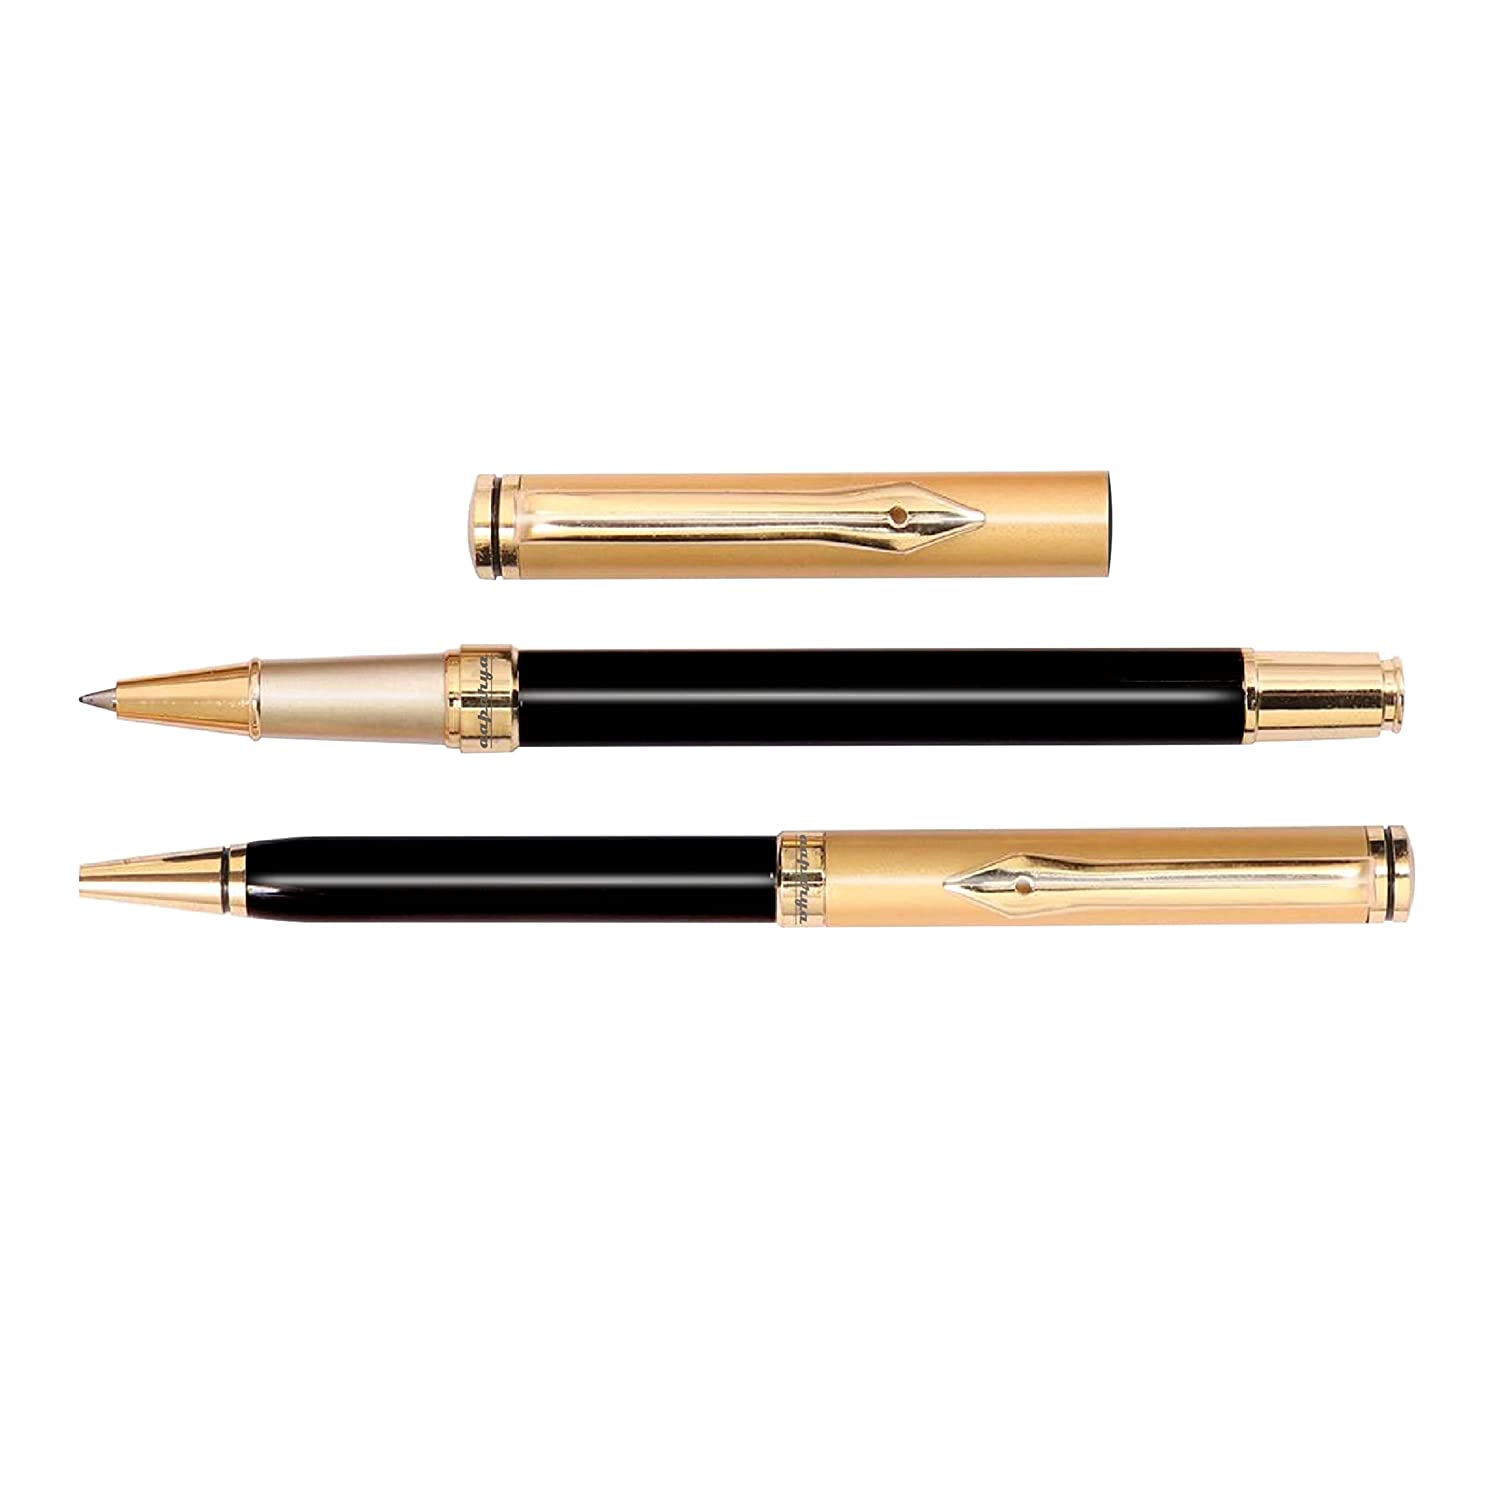 Aaparya Premium Pair of Ball Pen & Roller Pen, APVivo Gold & Black Full Brass Slim Body Luxury Pen with Genuine Leather Cover for Gift